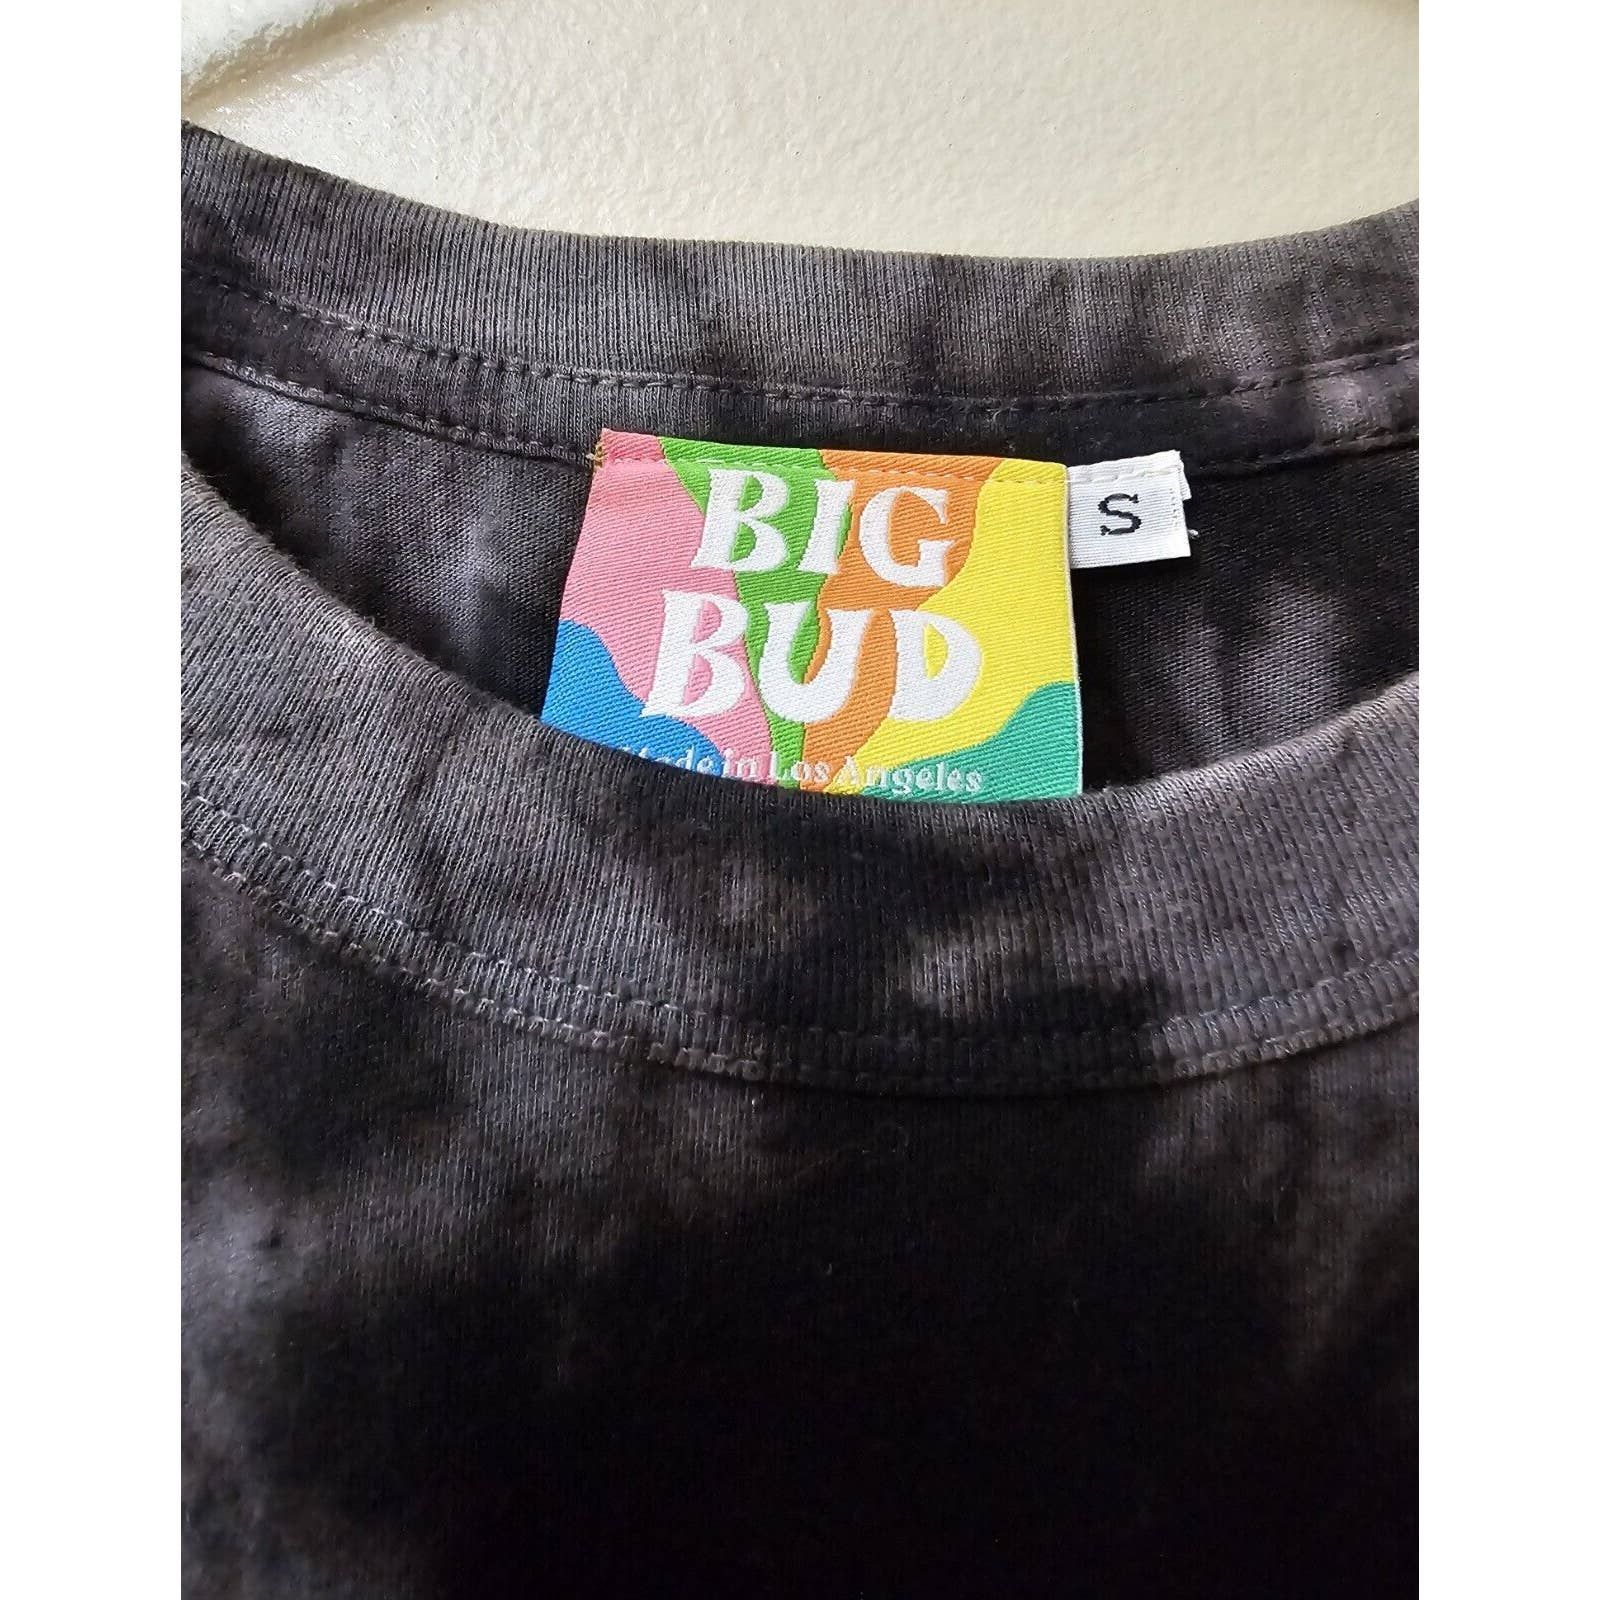 Big Bud Press Big Bud Press Tie Dye Unsix T-shirt Black/Gray Size S Size S / US 4 / IT 40 - 5 Thumbnail